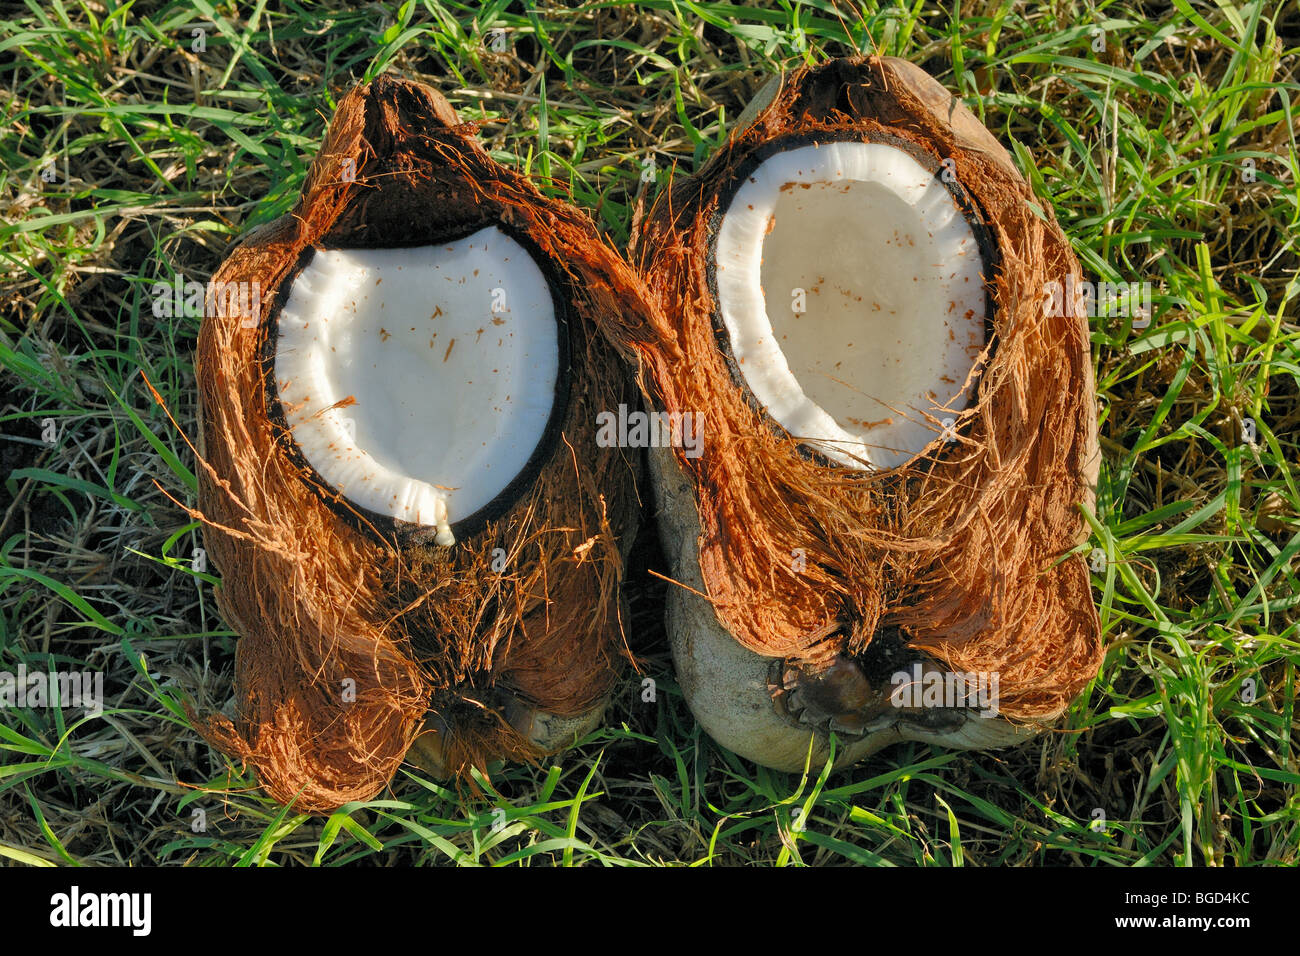 Freshly opened coconut Stock Photo